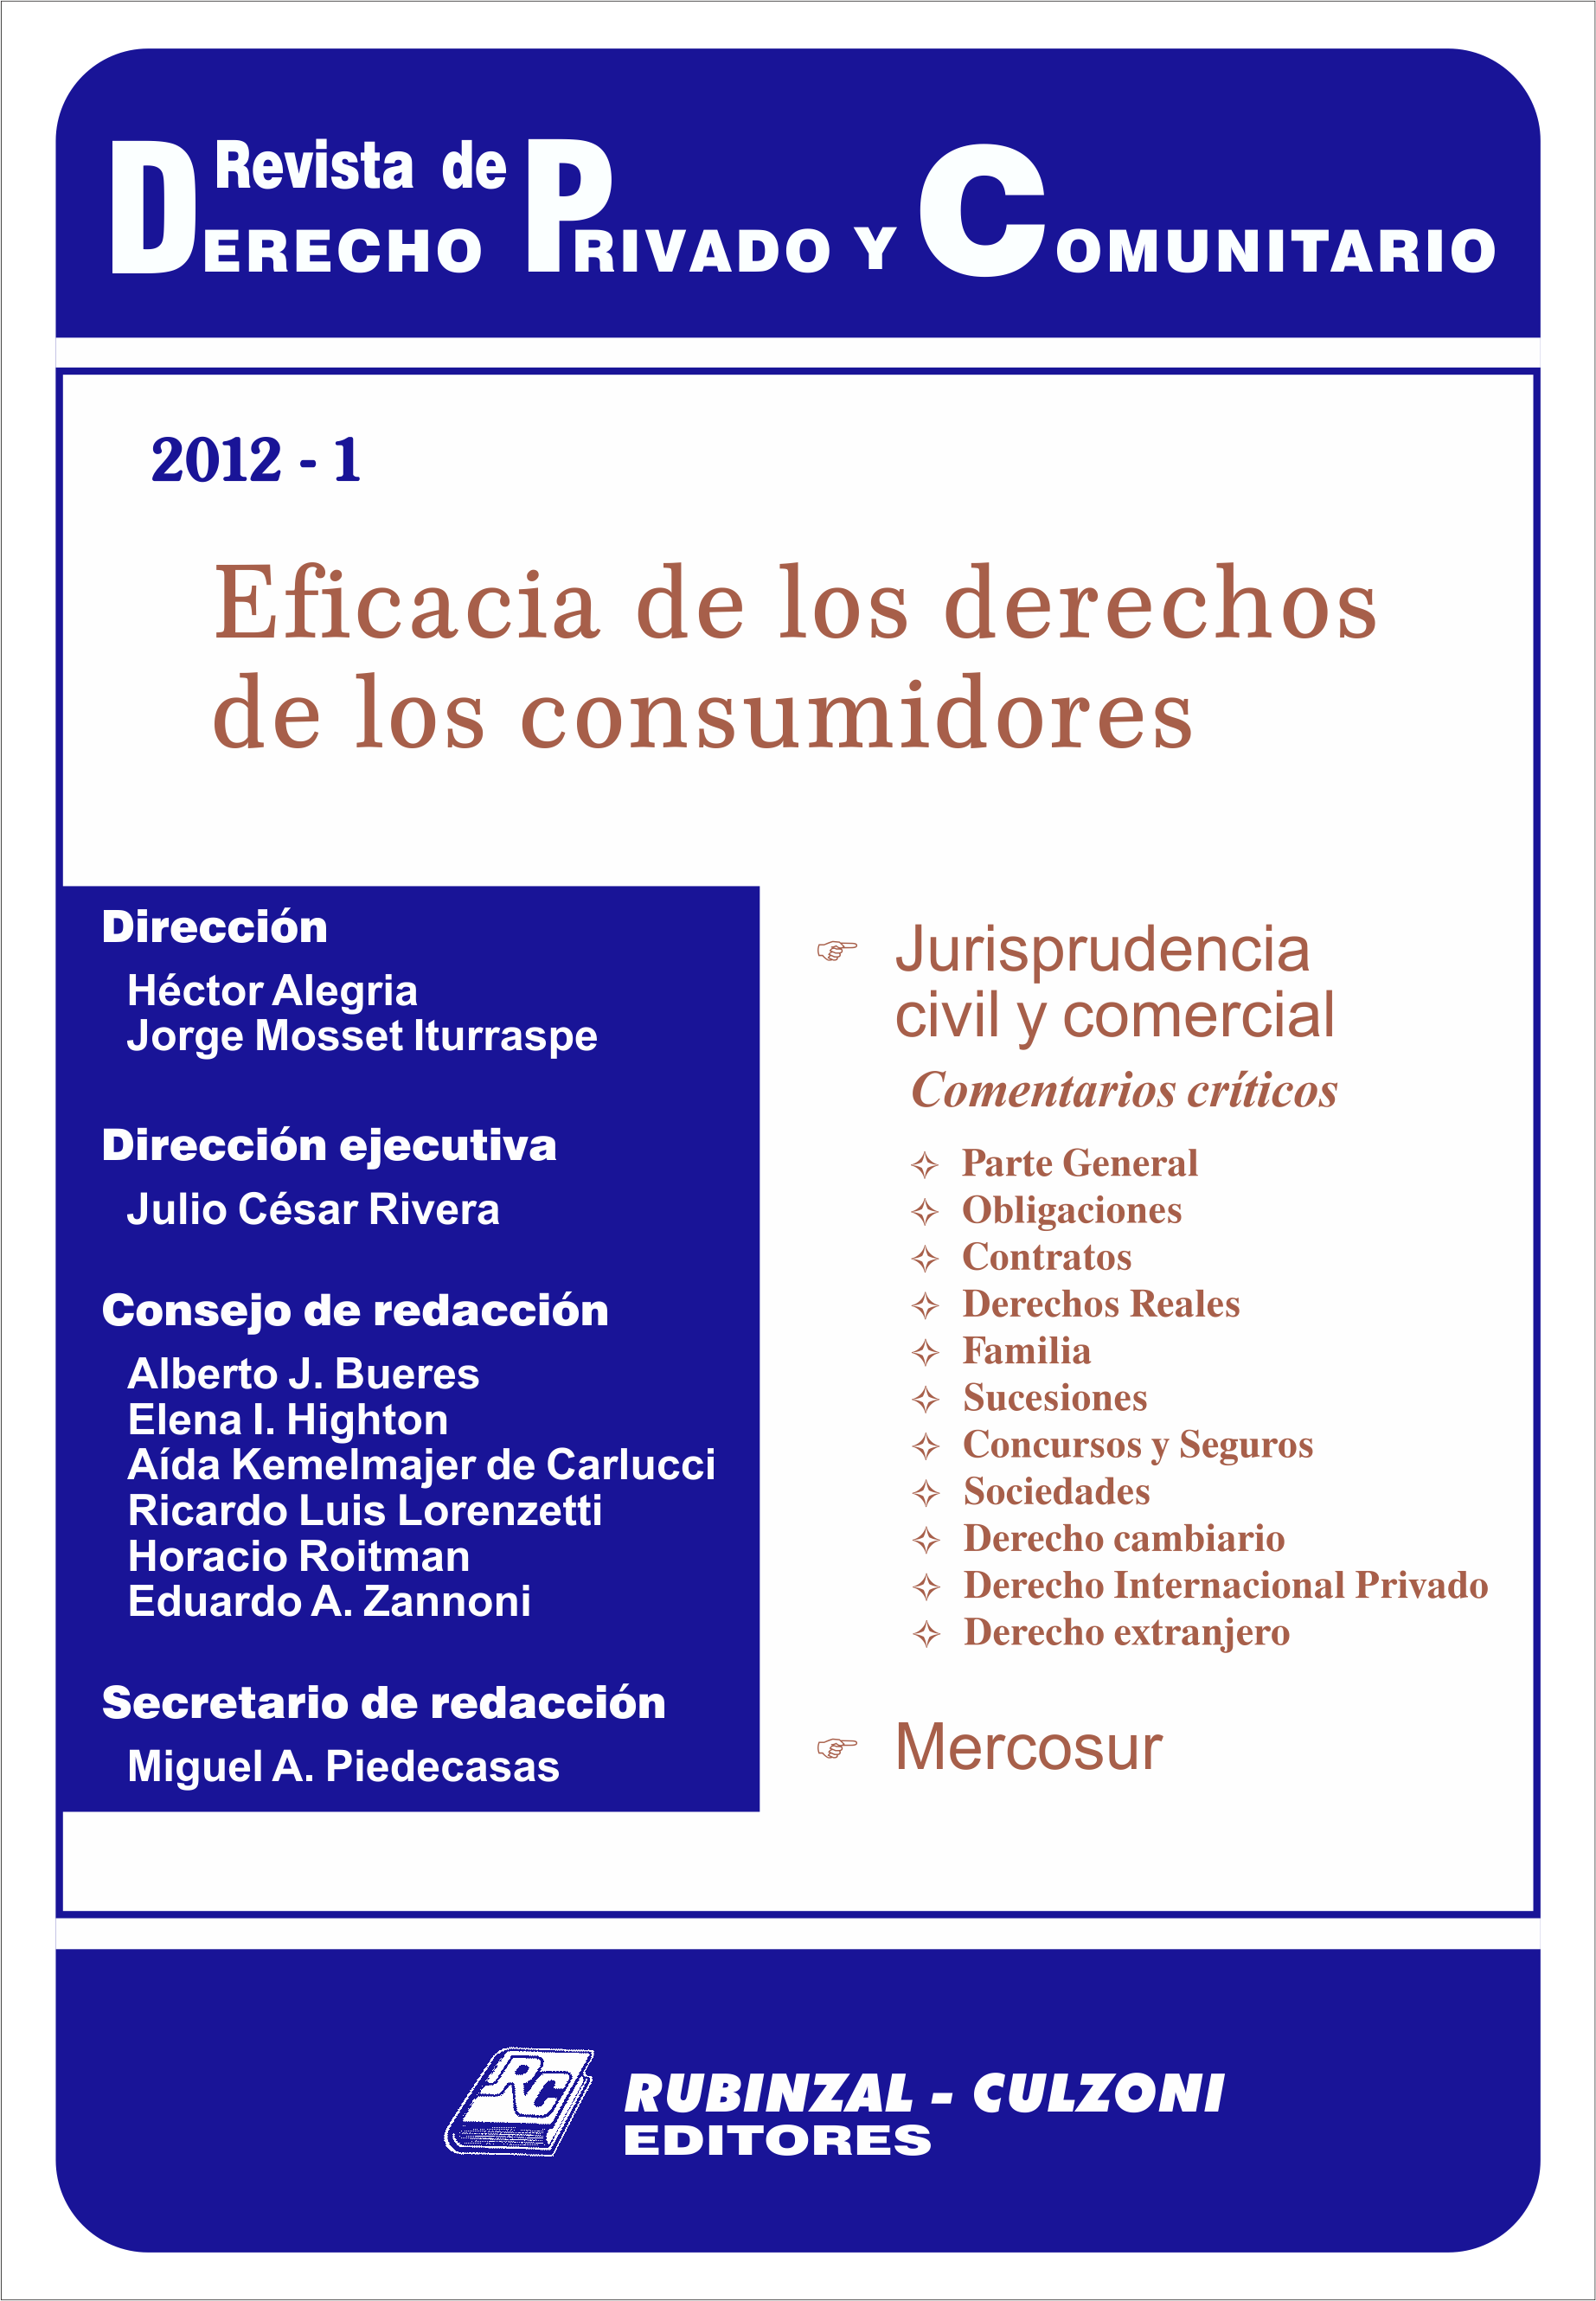 Revista de Derecho Privado y Comunitario - Eficacia de los derechos de los consumidores.